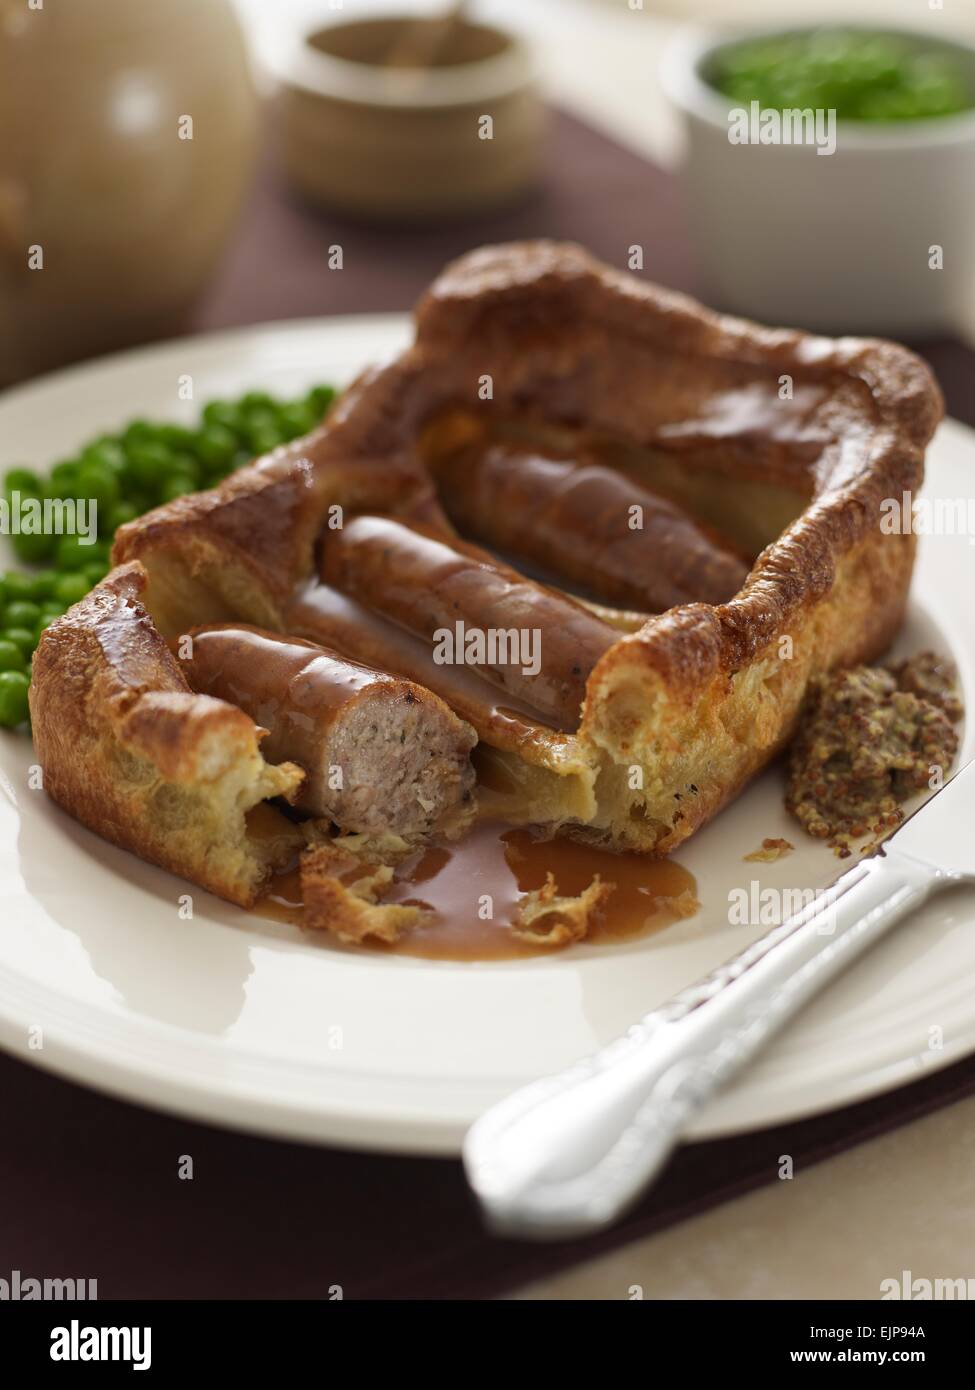 vergoldete Mahlzeit der Kröte im Loch große quadratische Yorkshire Pudding mit drei Würstchen Soße Erbsen und Vollkorn-Senf Stockfoto